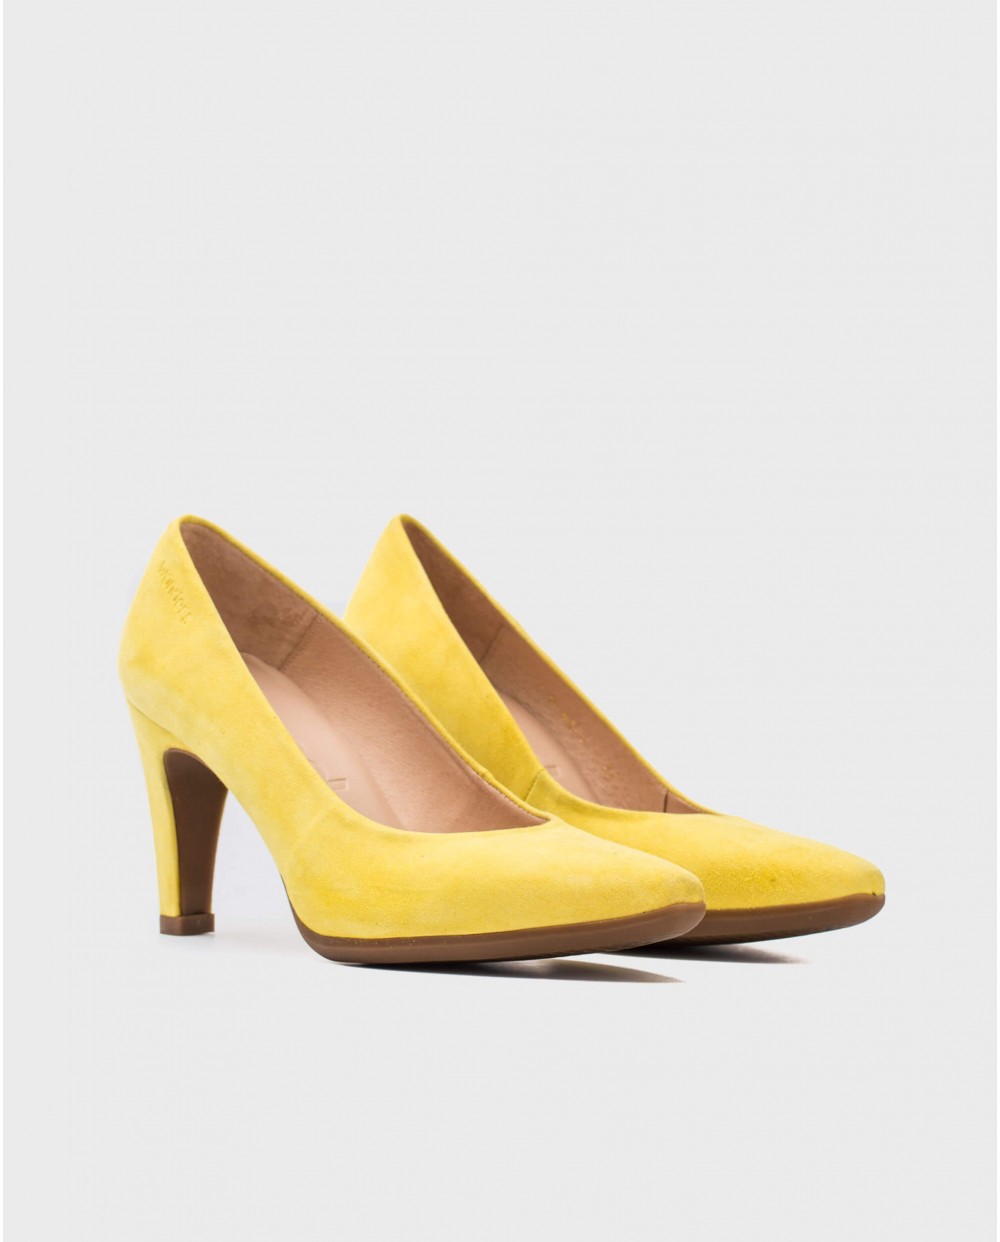 Wonders-Heels-Suede High heeled shoes